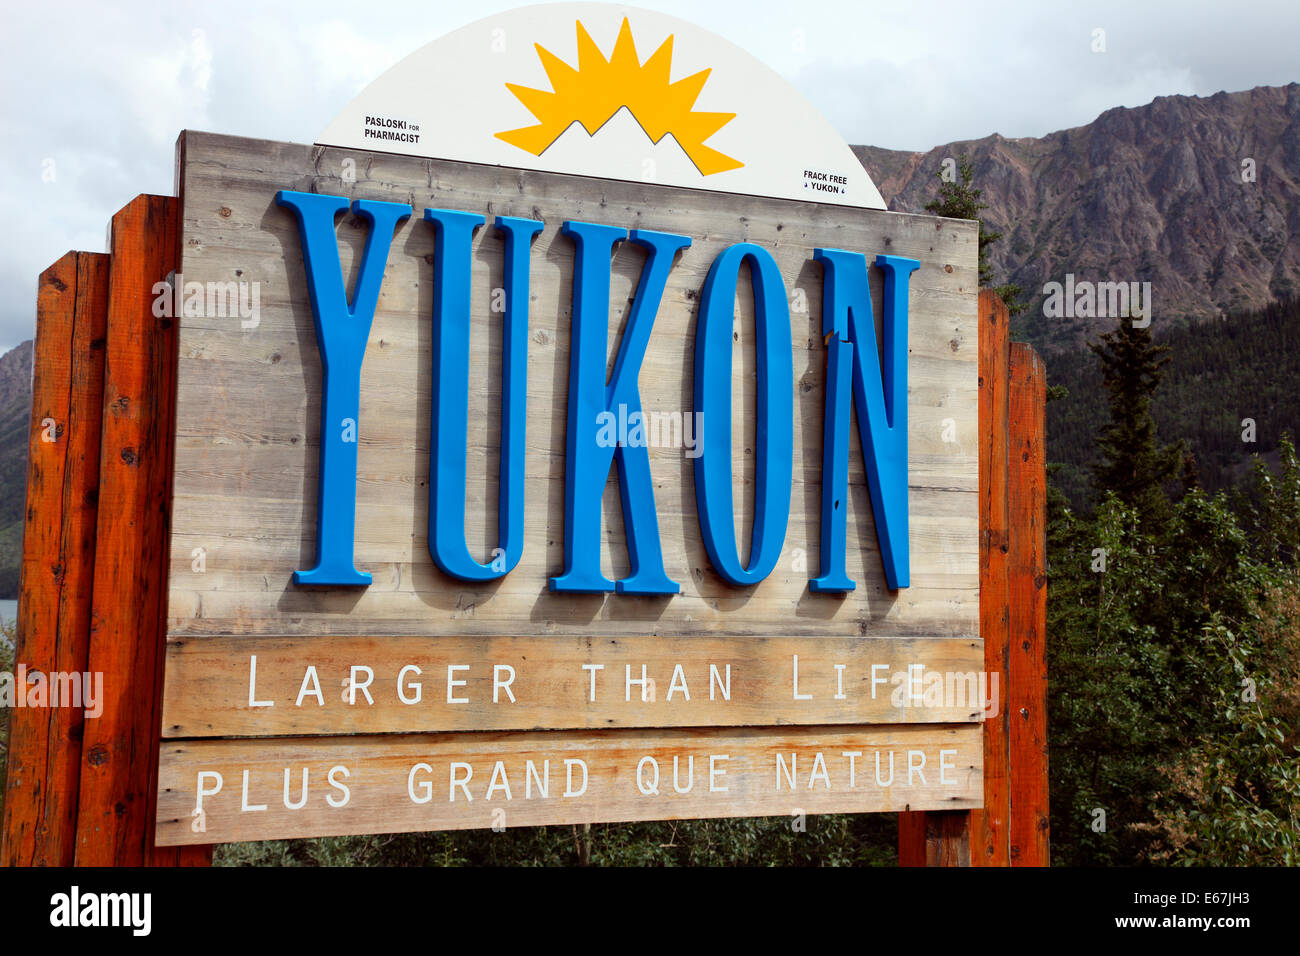 Yukon sign in British Columbia. Stock Photo